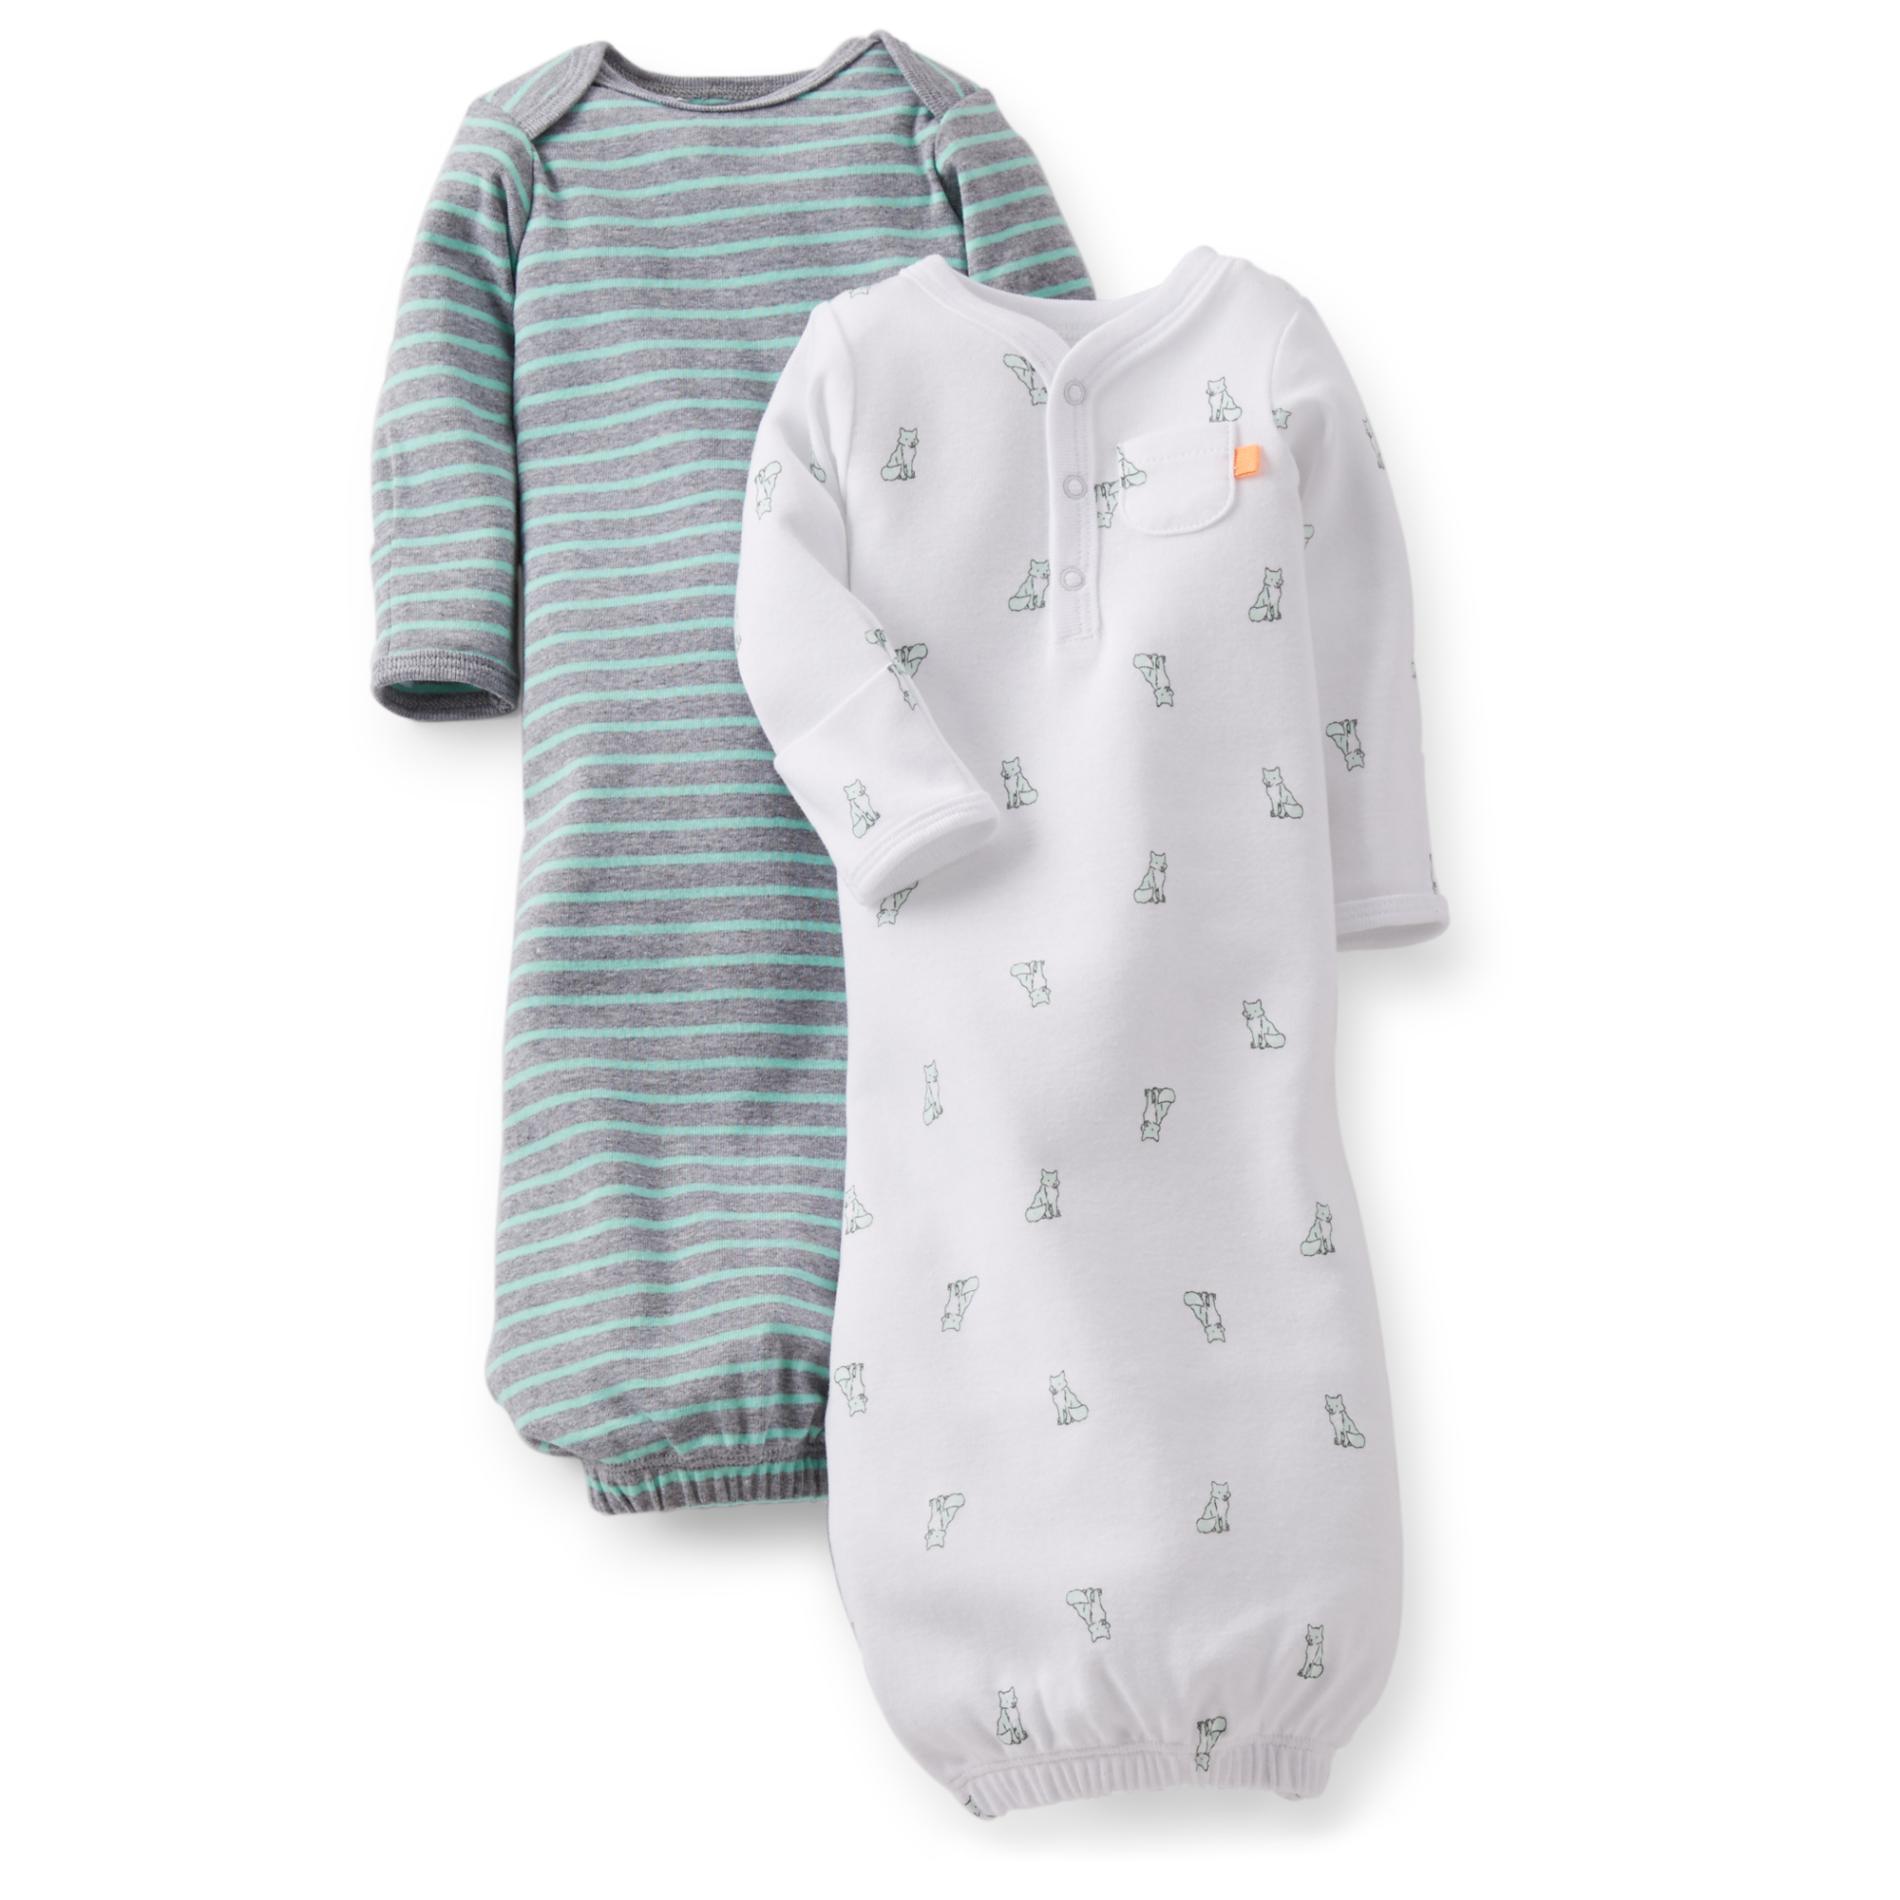 Carter's Set of 2 Newborn & Infant Boy's Sleep Gowns